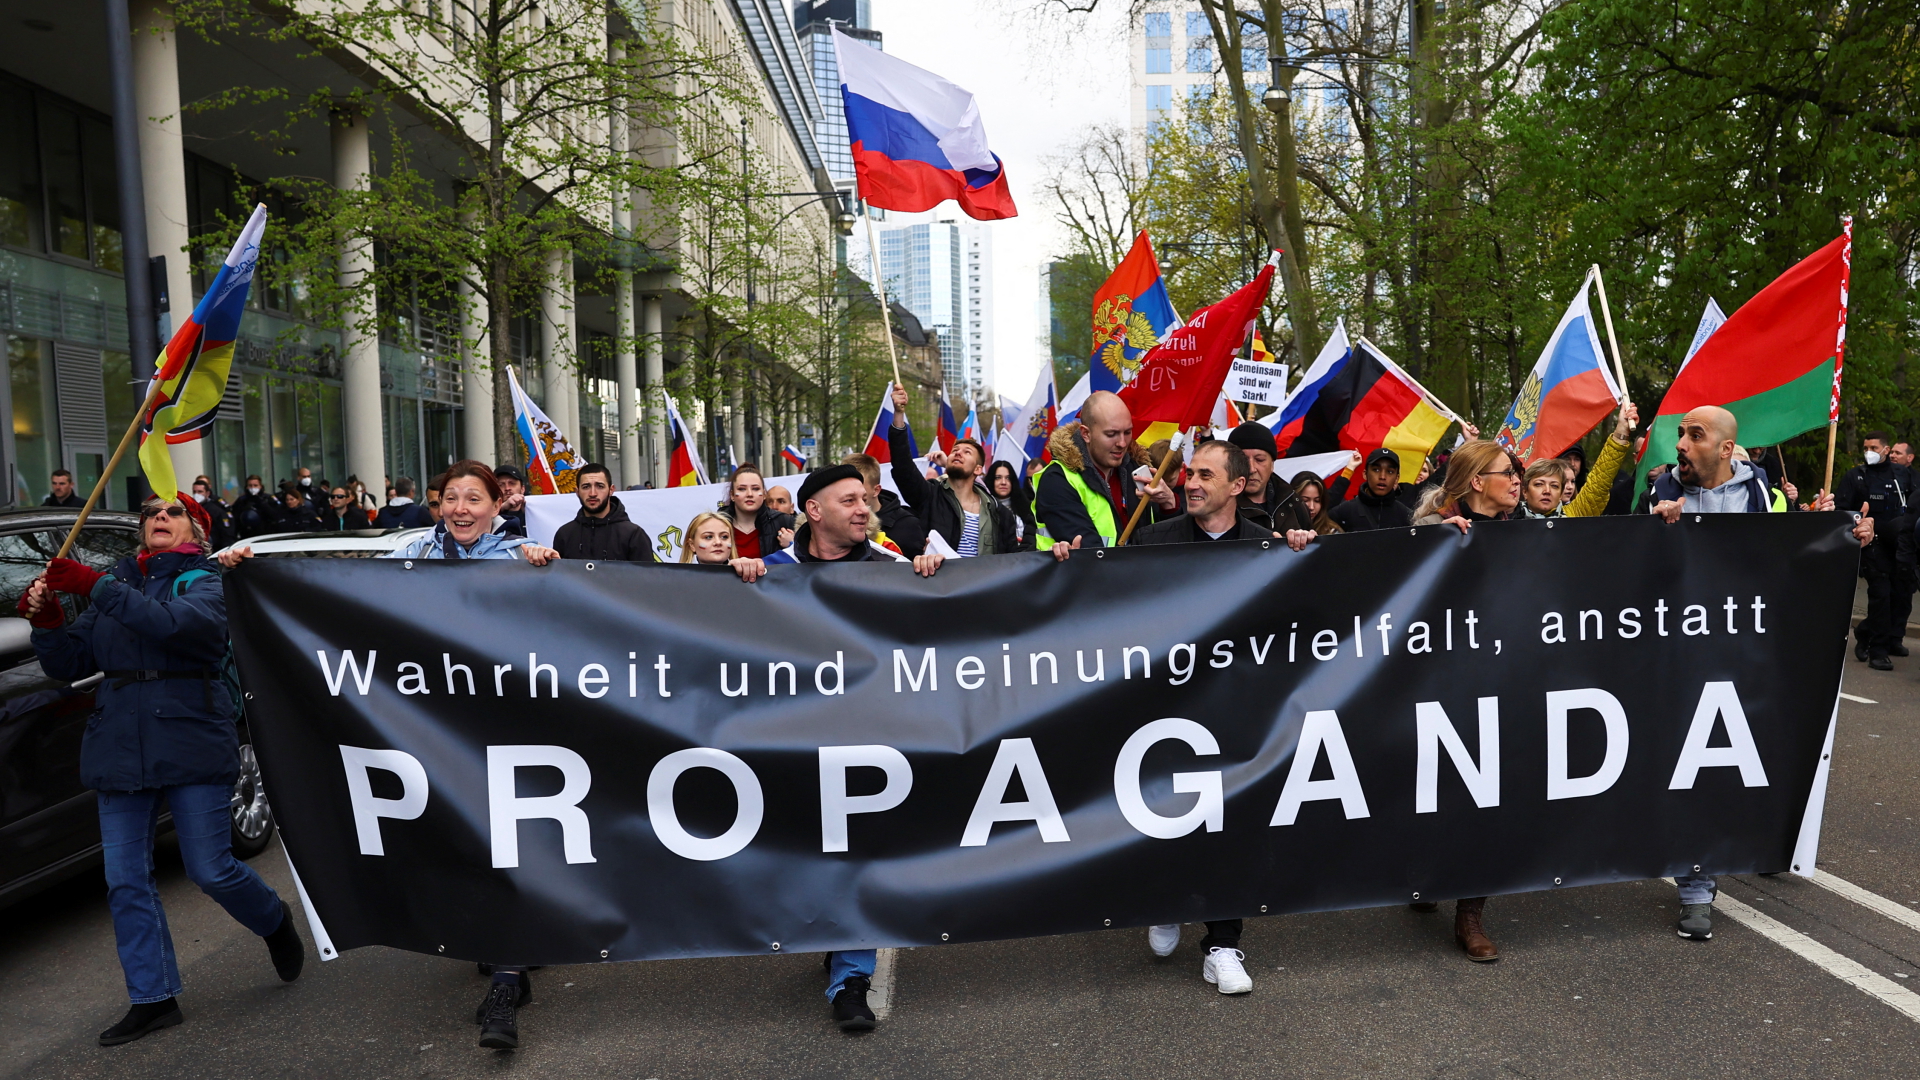 Teilnehmer einer russischen Unterstützerdemonstration tragen ein Transparent, auf dem steht "Wahrheit und Meinungsvielfalt anstatt Propaganda". | REUTERS